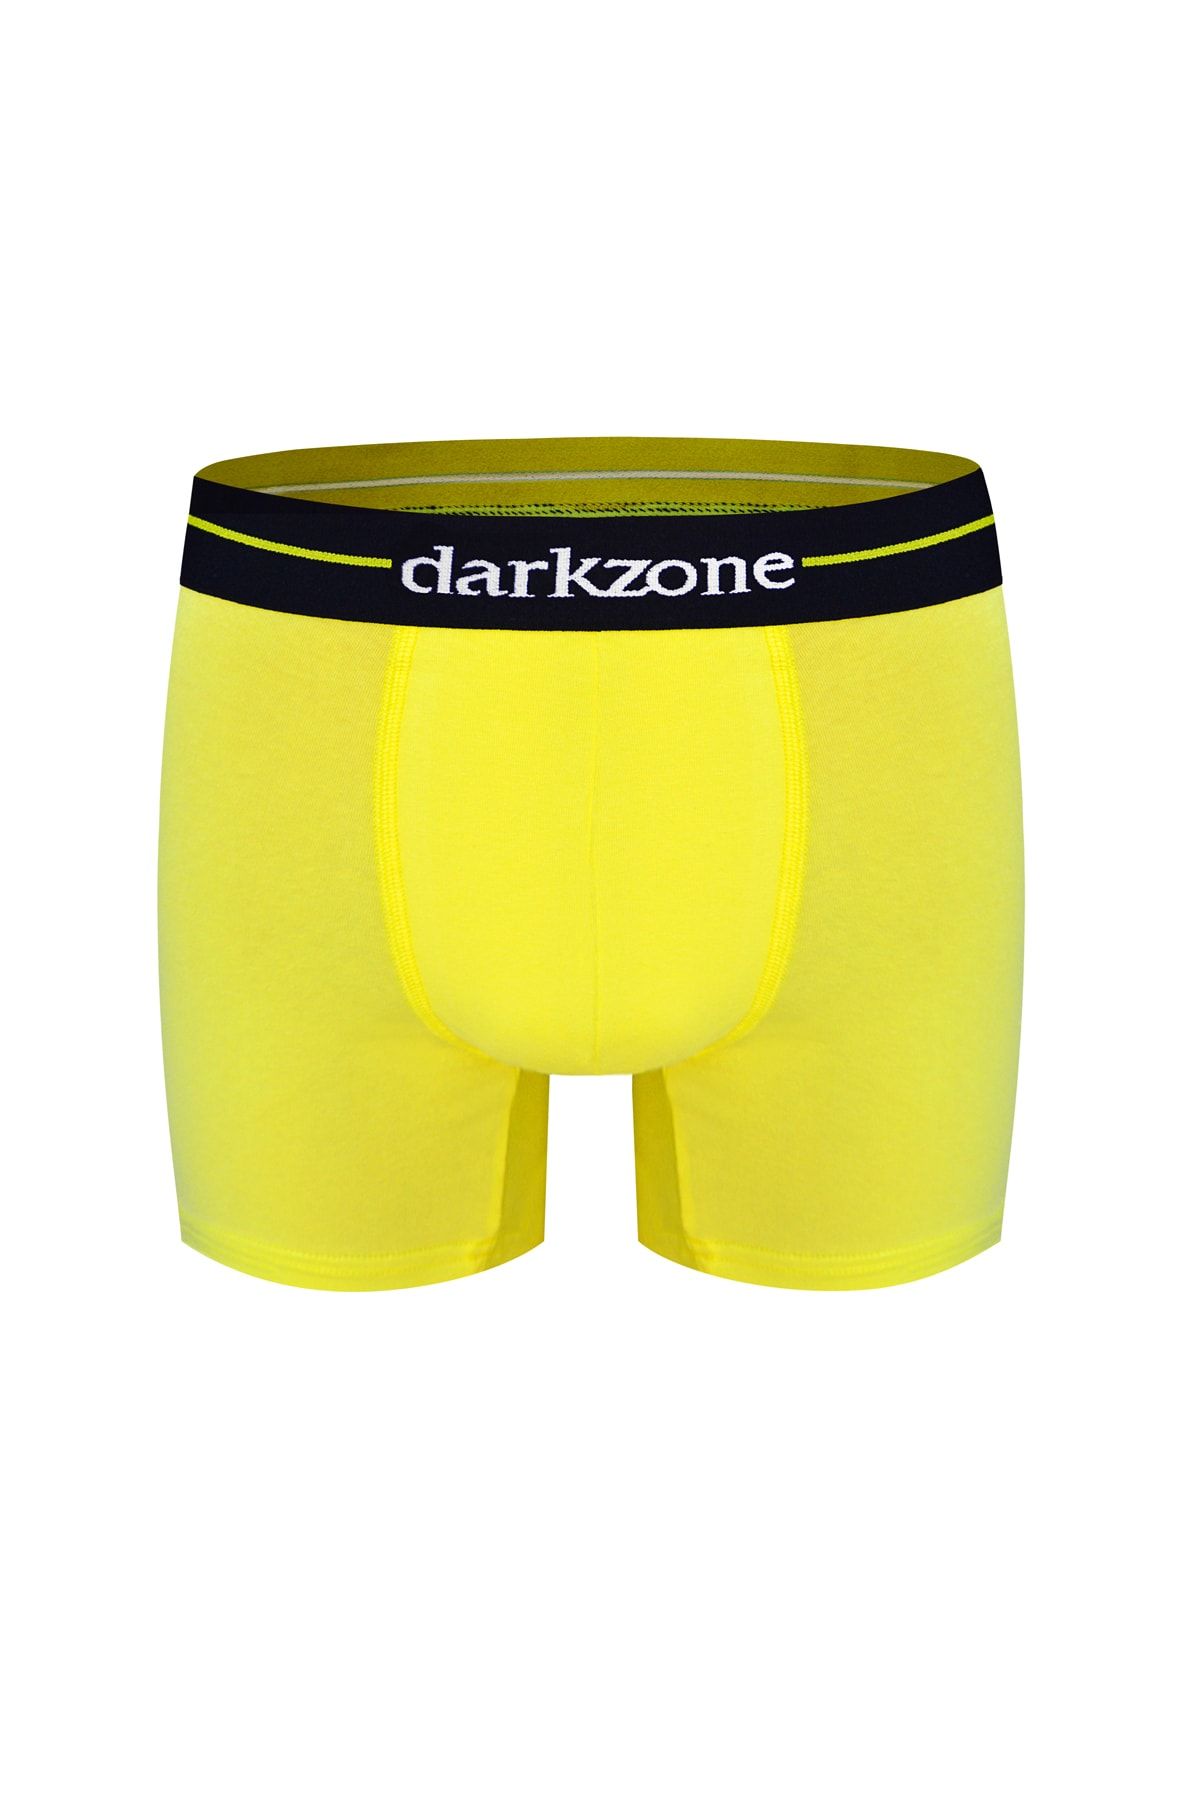 Darkzone Erkek Likralı Klasik Sarı Boxer